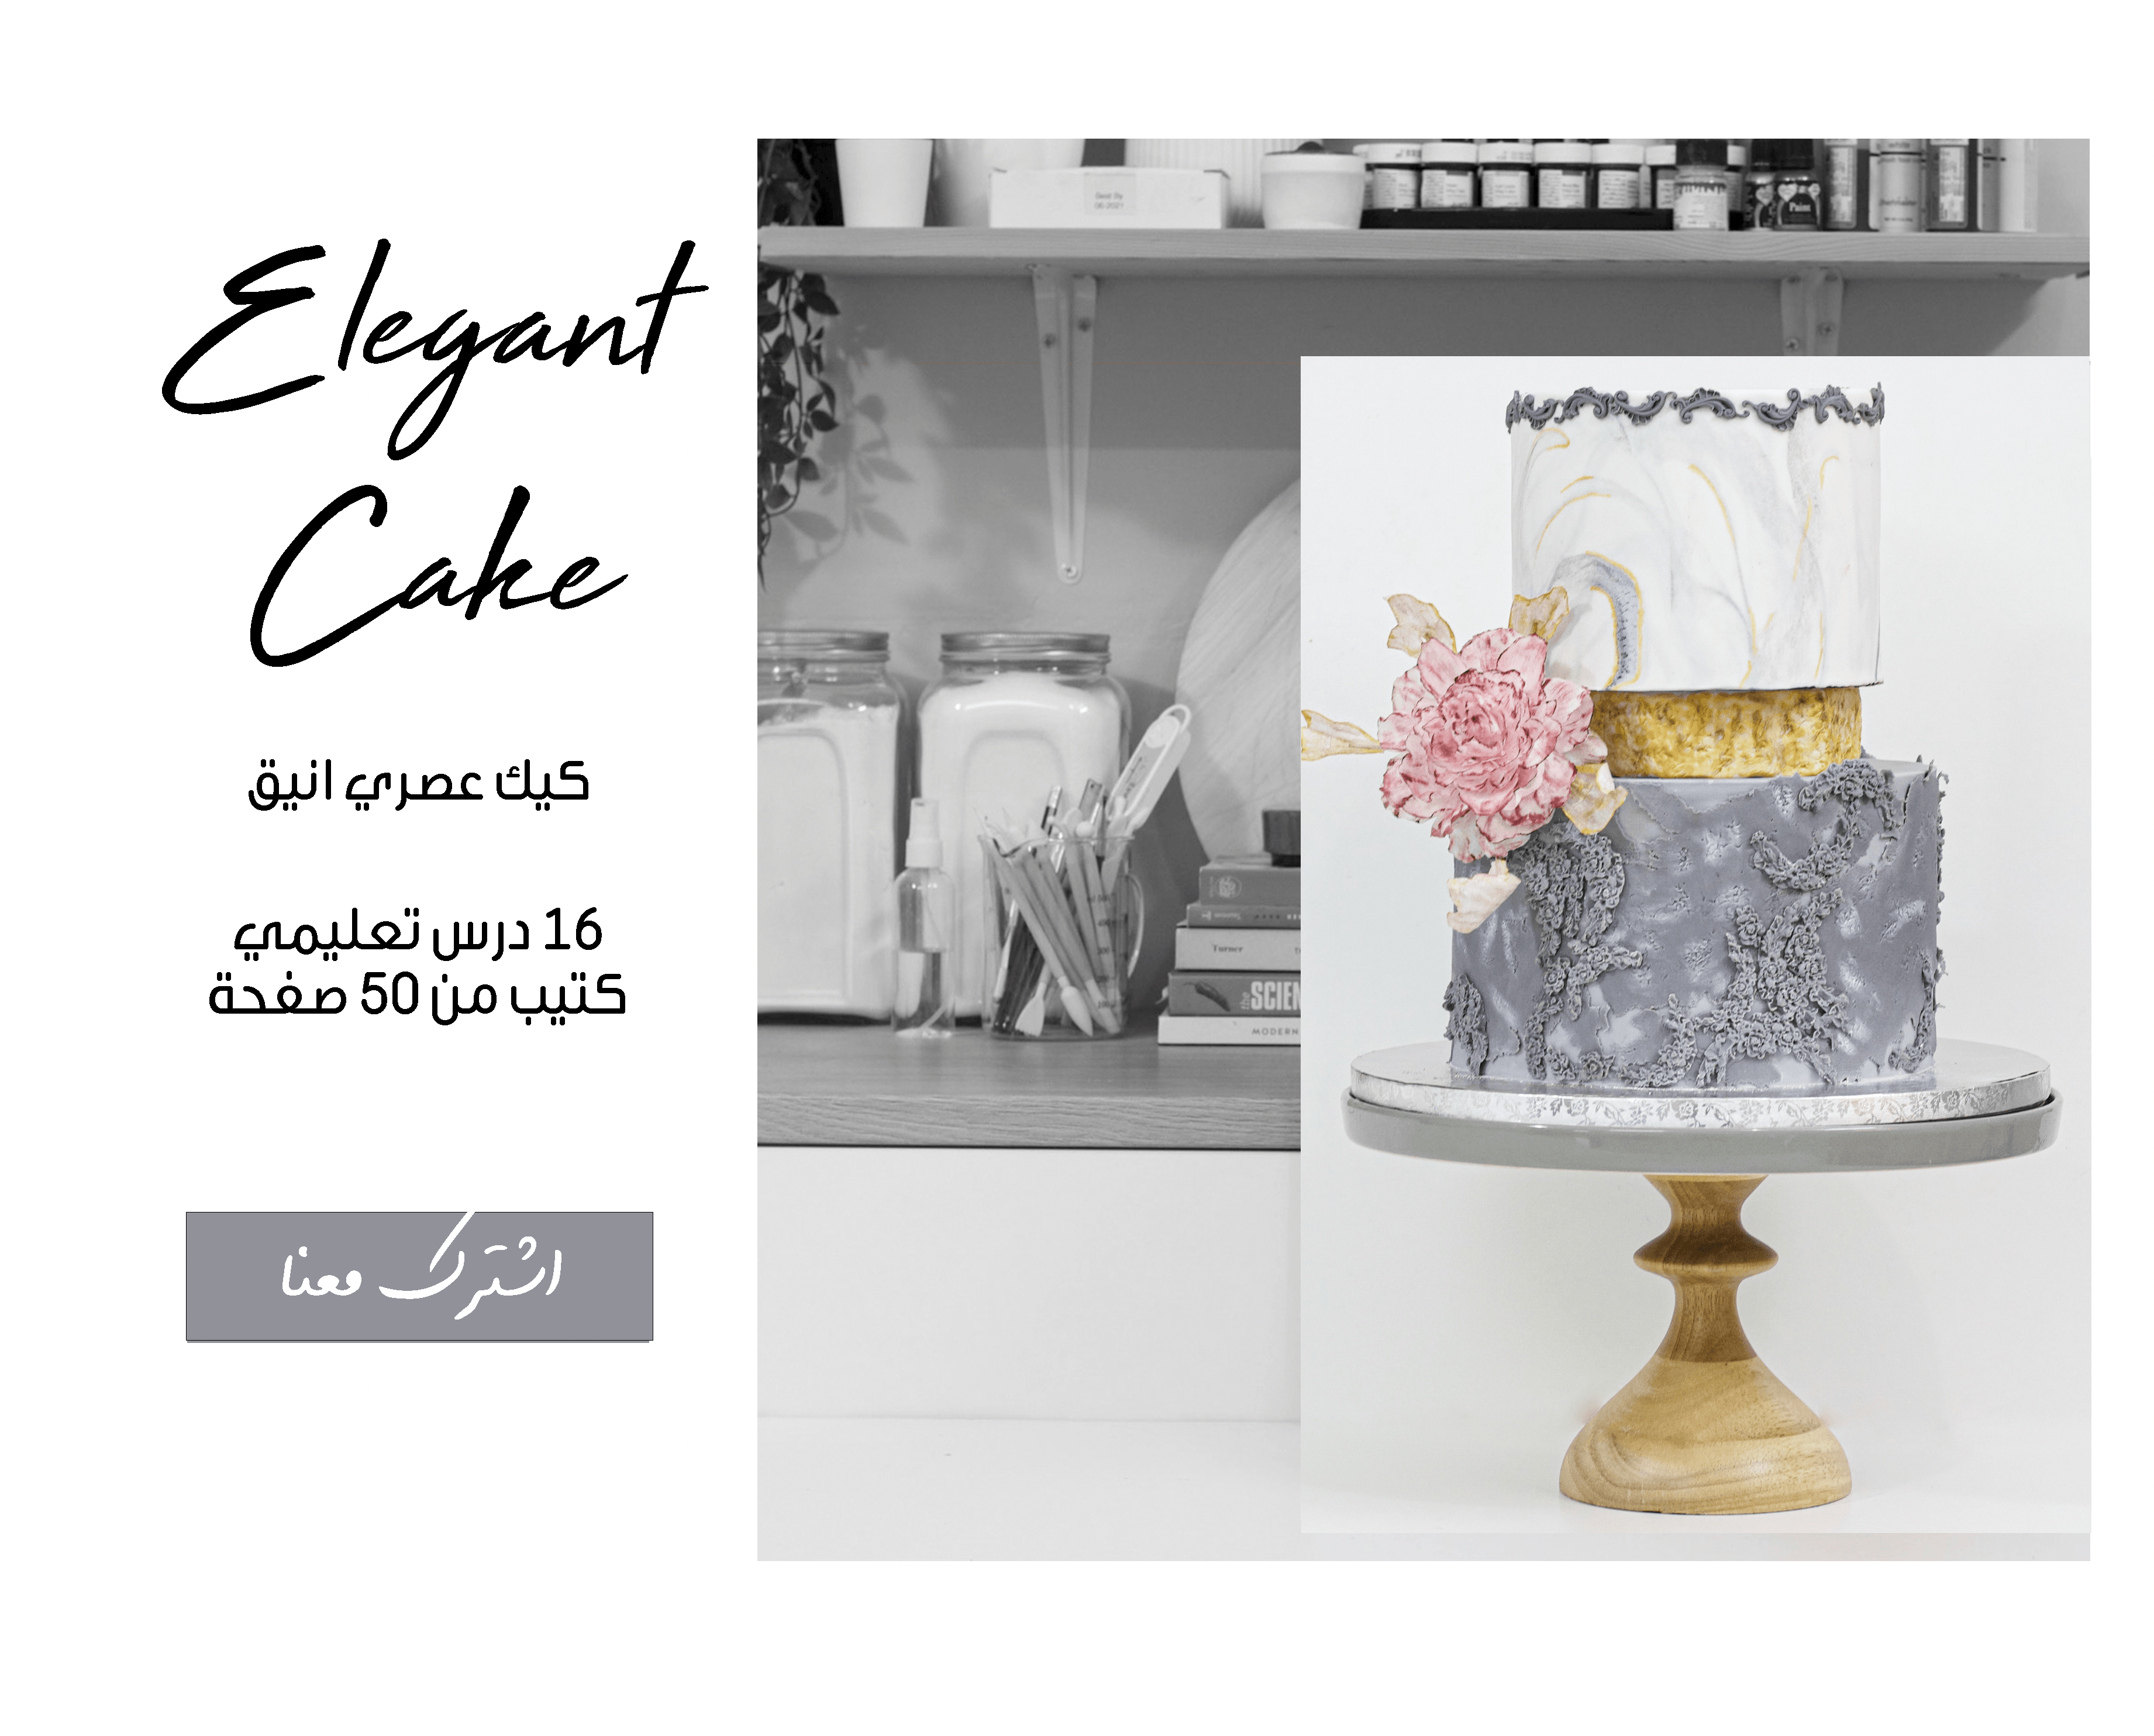 الكيك العصري / elegant cake